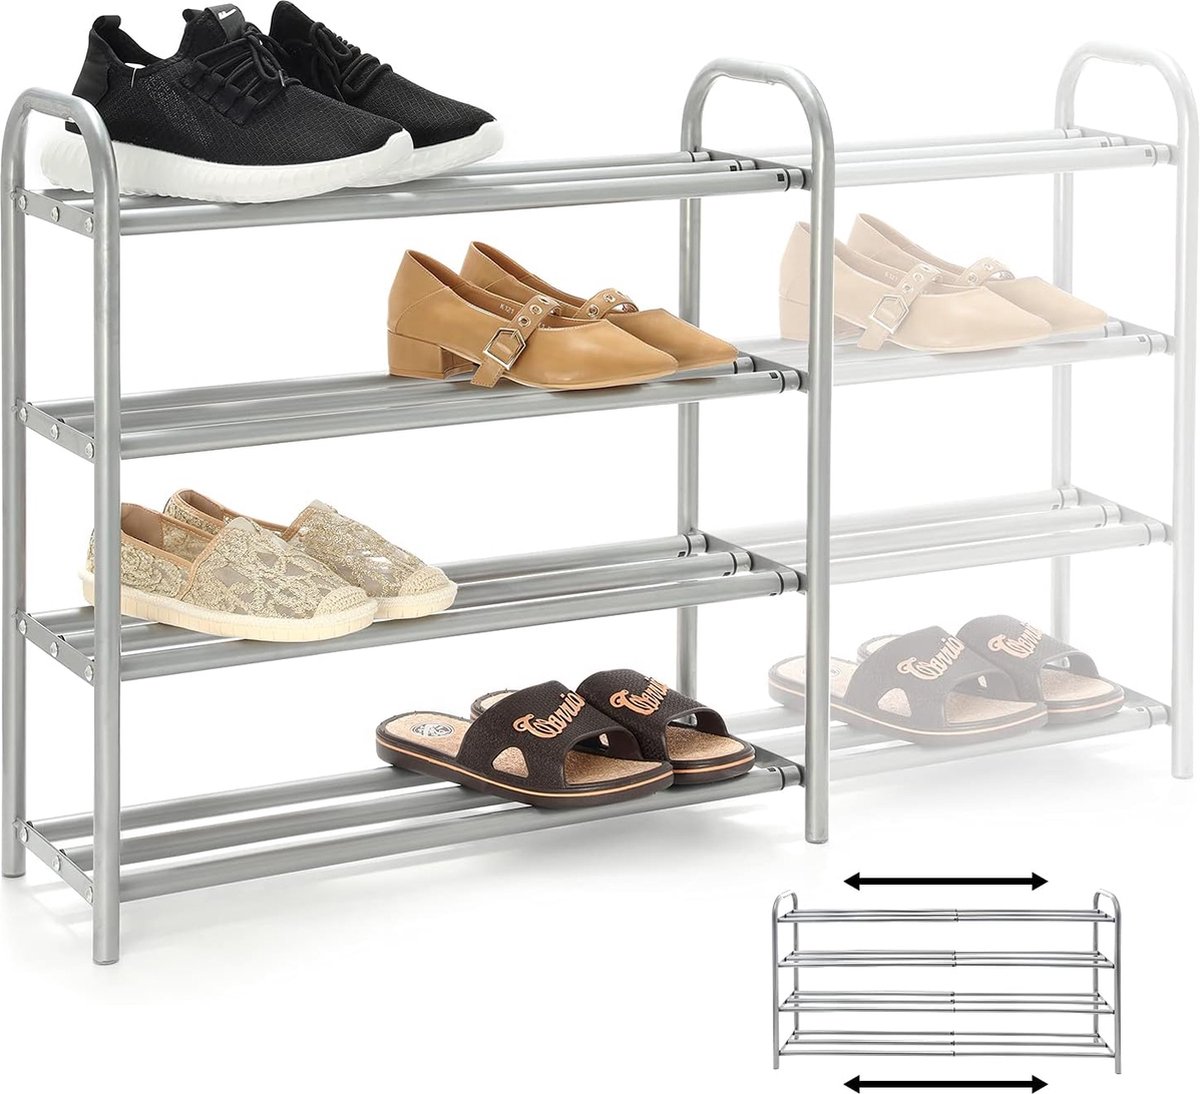 4-laags uitschuifbare schoenenrekorganisator, stevig metalen rek voor maximaal 20 paar schoenen, ruimtebesparend rek voor kledingkast. (8998339468122)